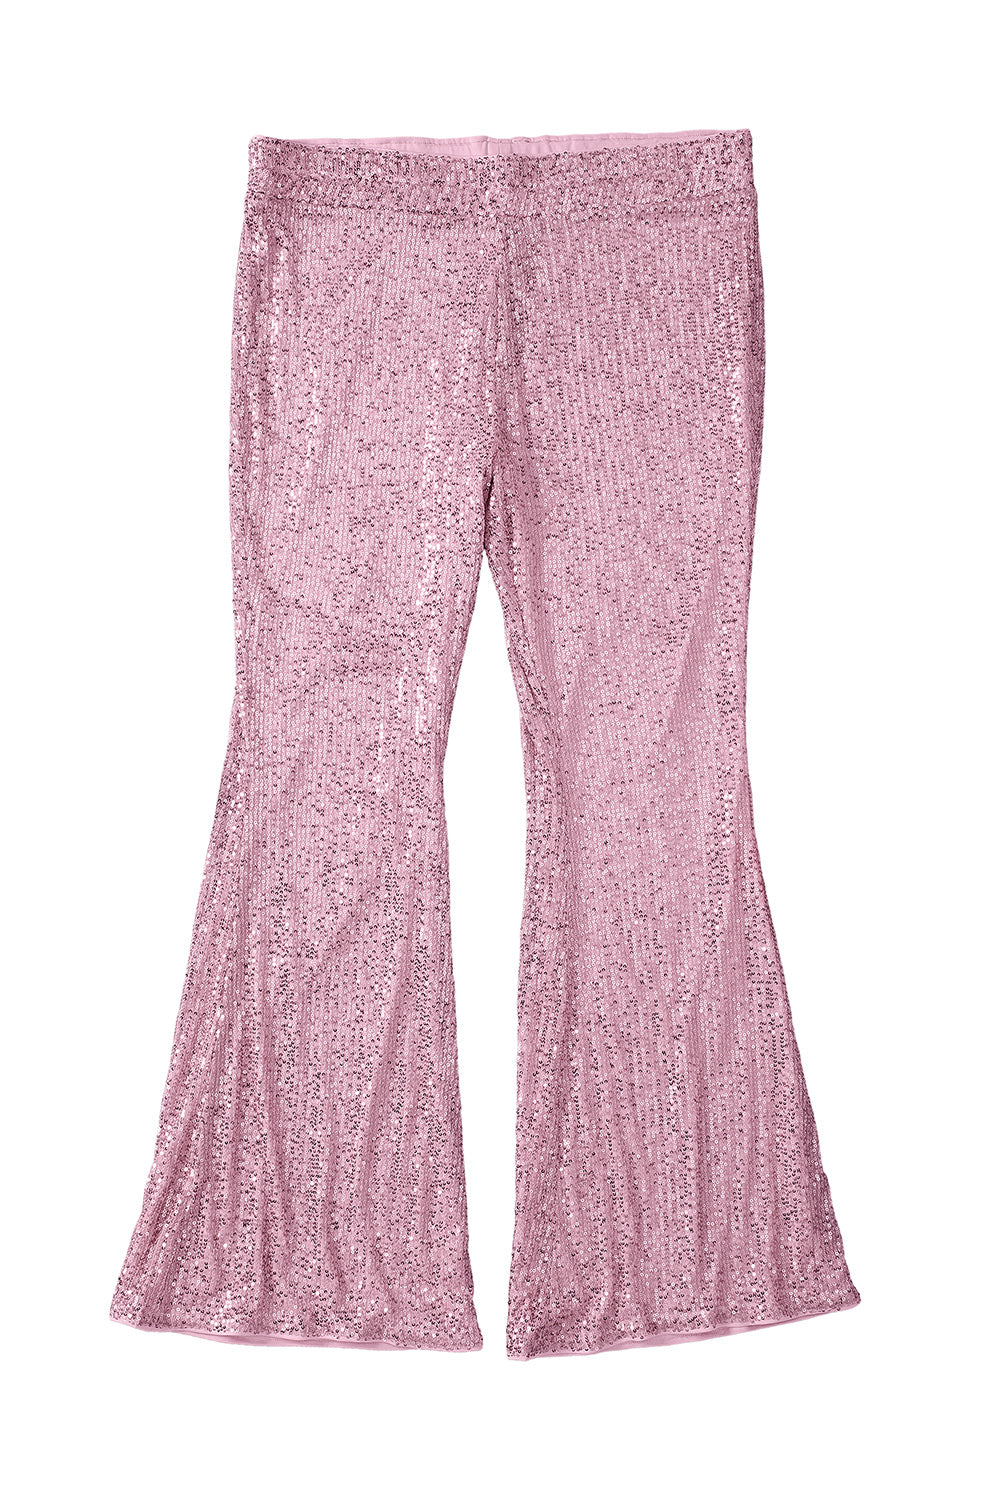 Rožnate svetleče široke hlače z bleščicami velike velikosti